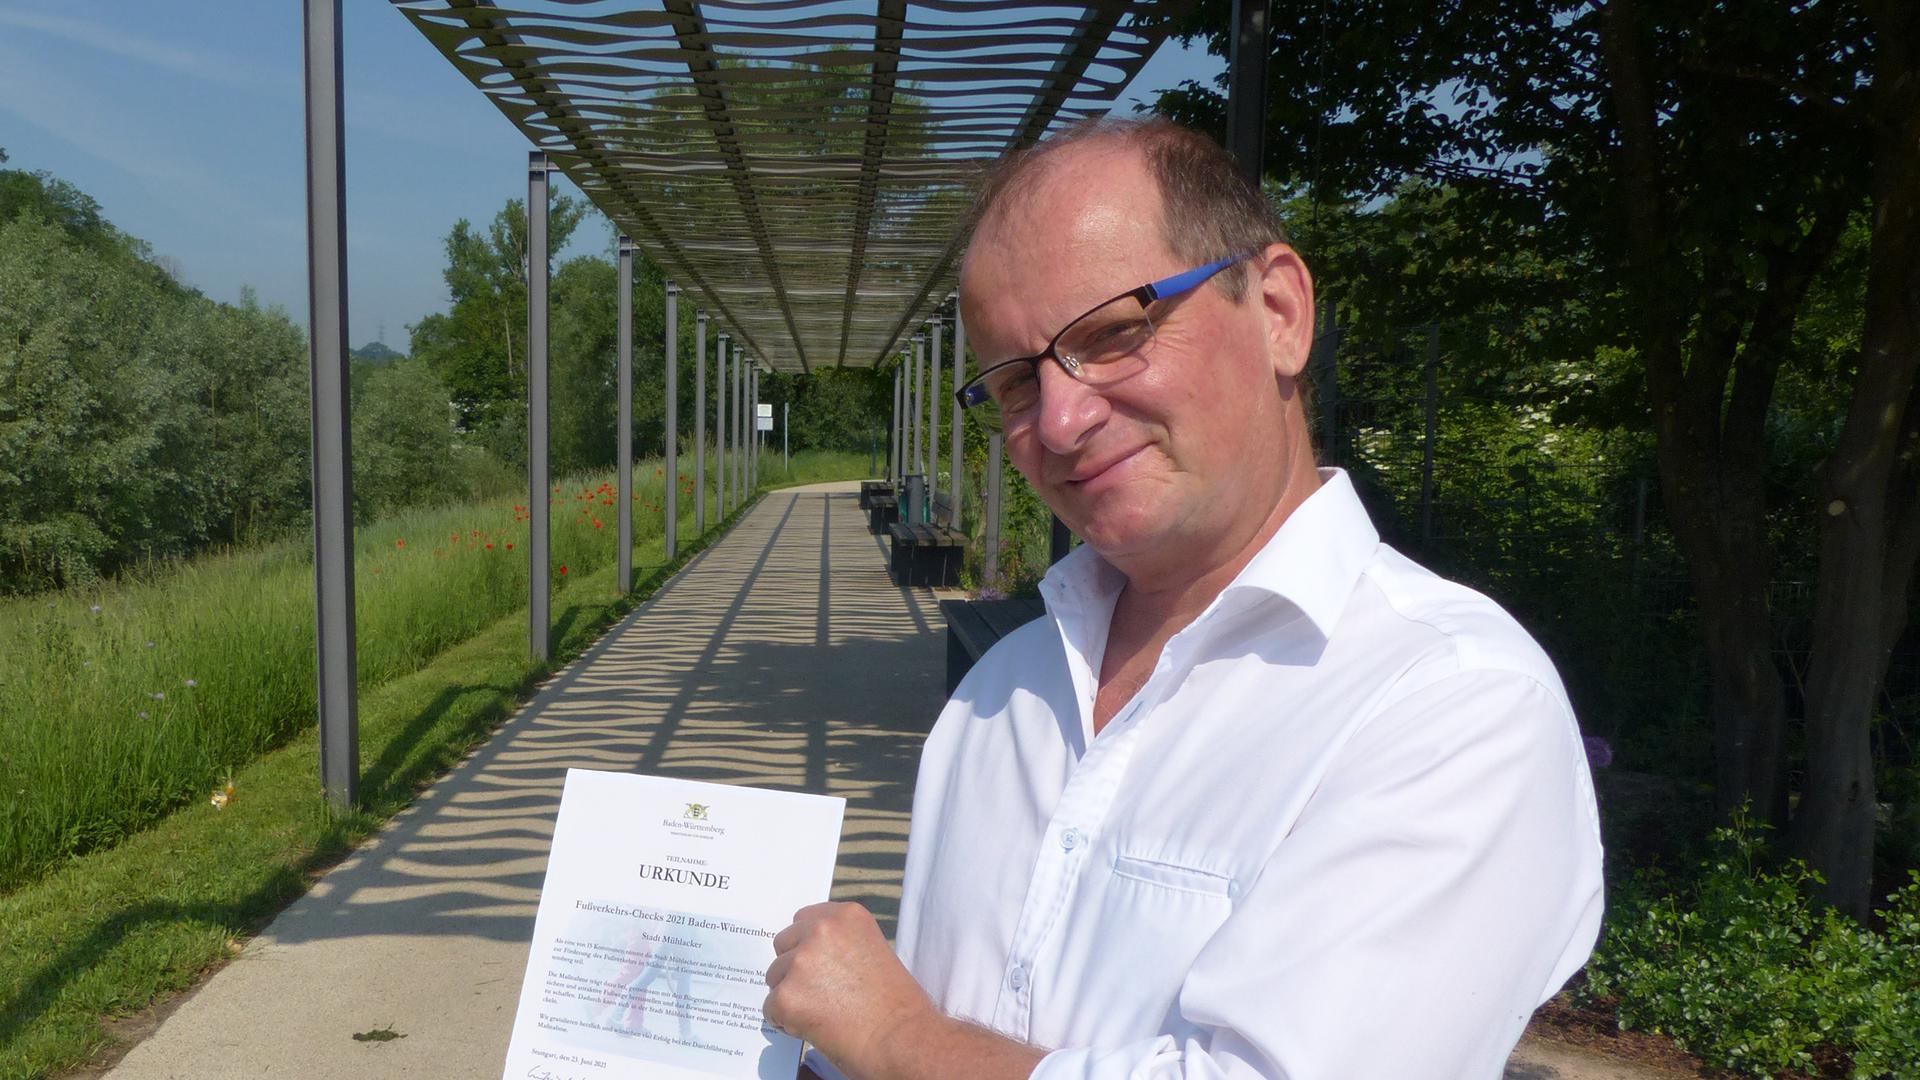 Bürgermeister Winfried Abicht freut sich darüber, dass ein Fußverkehrs-Check in diesem Jahr auch in Mühlacker möglich ist